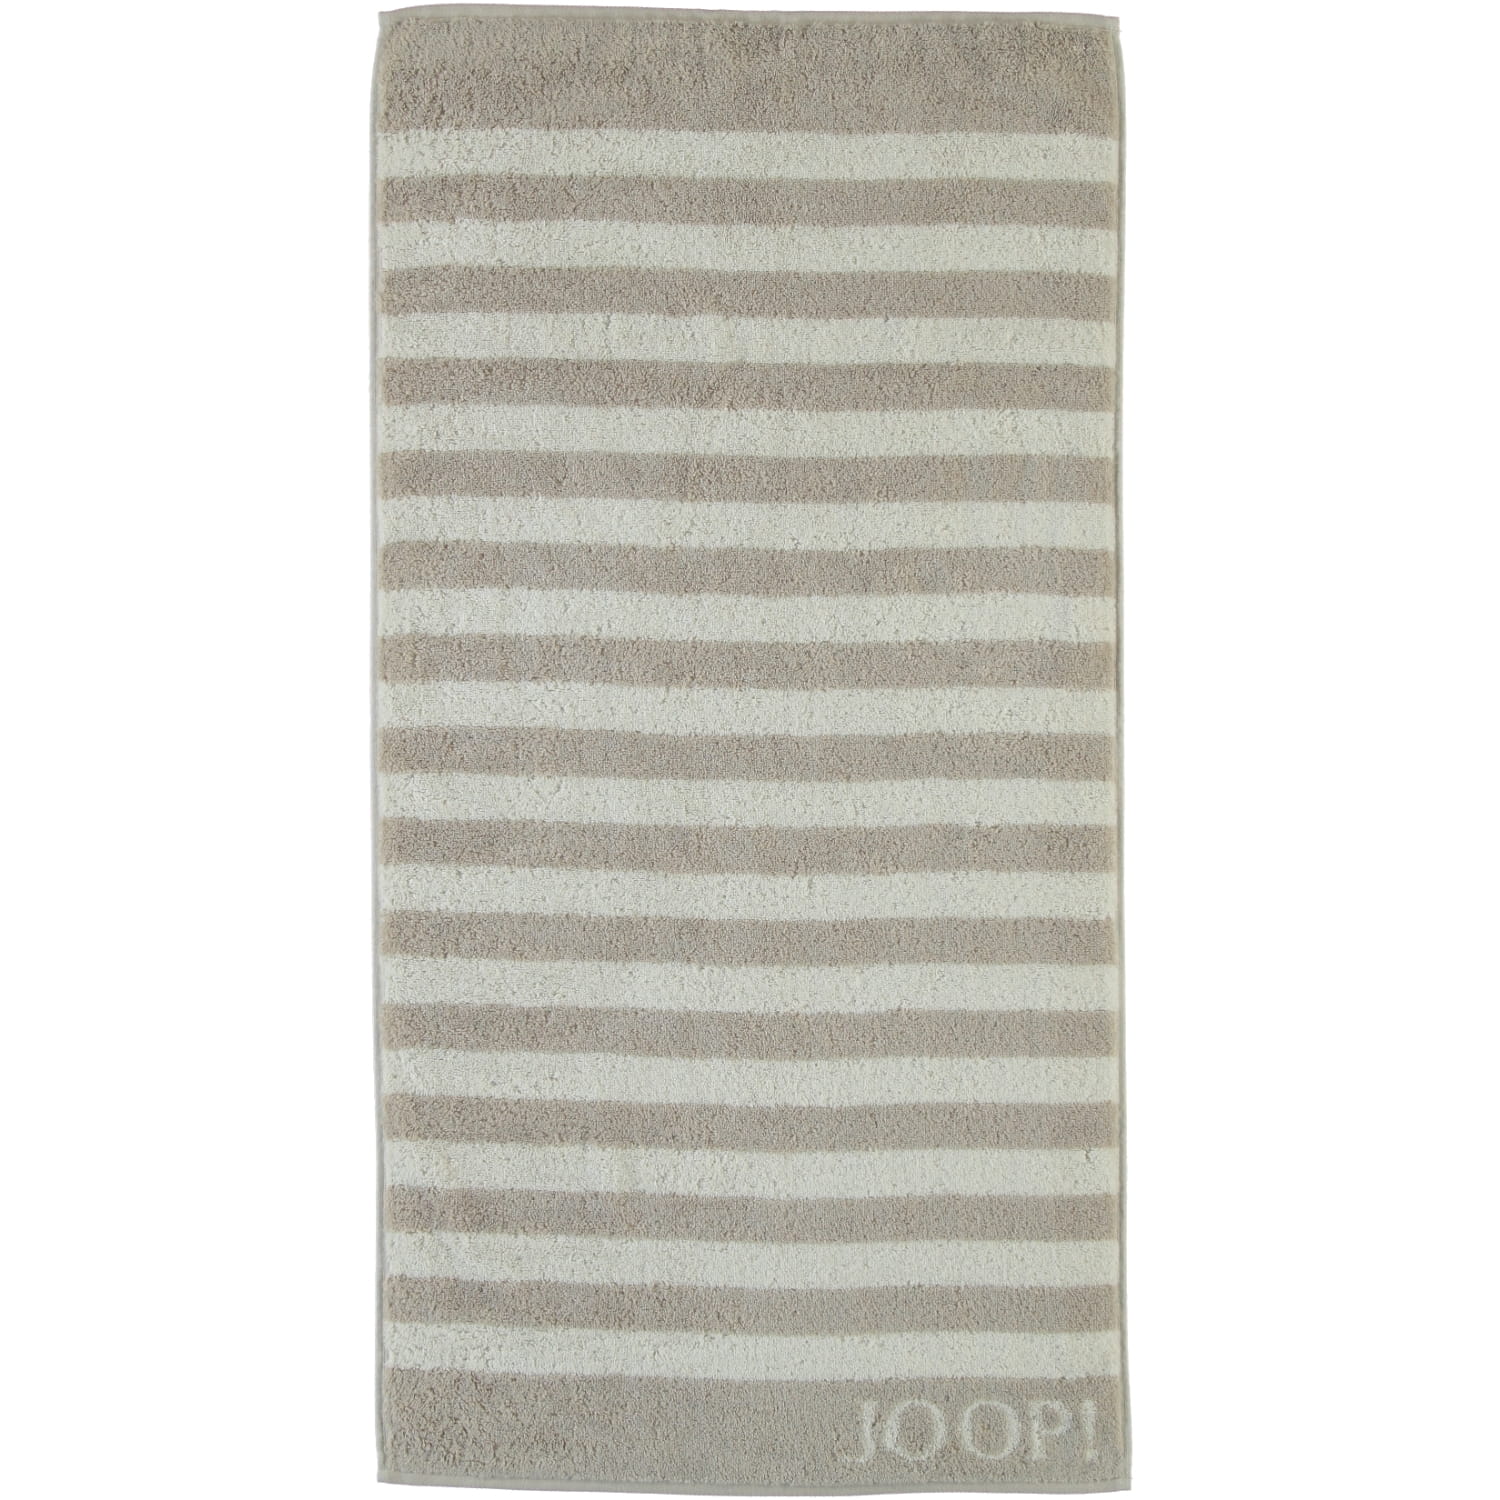 JOOP! Classic - Stripes 1610 - Farbe: Sand - 30 - Duschtuch 80x150 cm |  Duschtuch | Handtücher